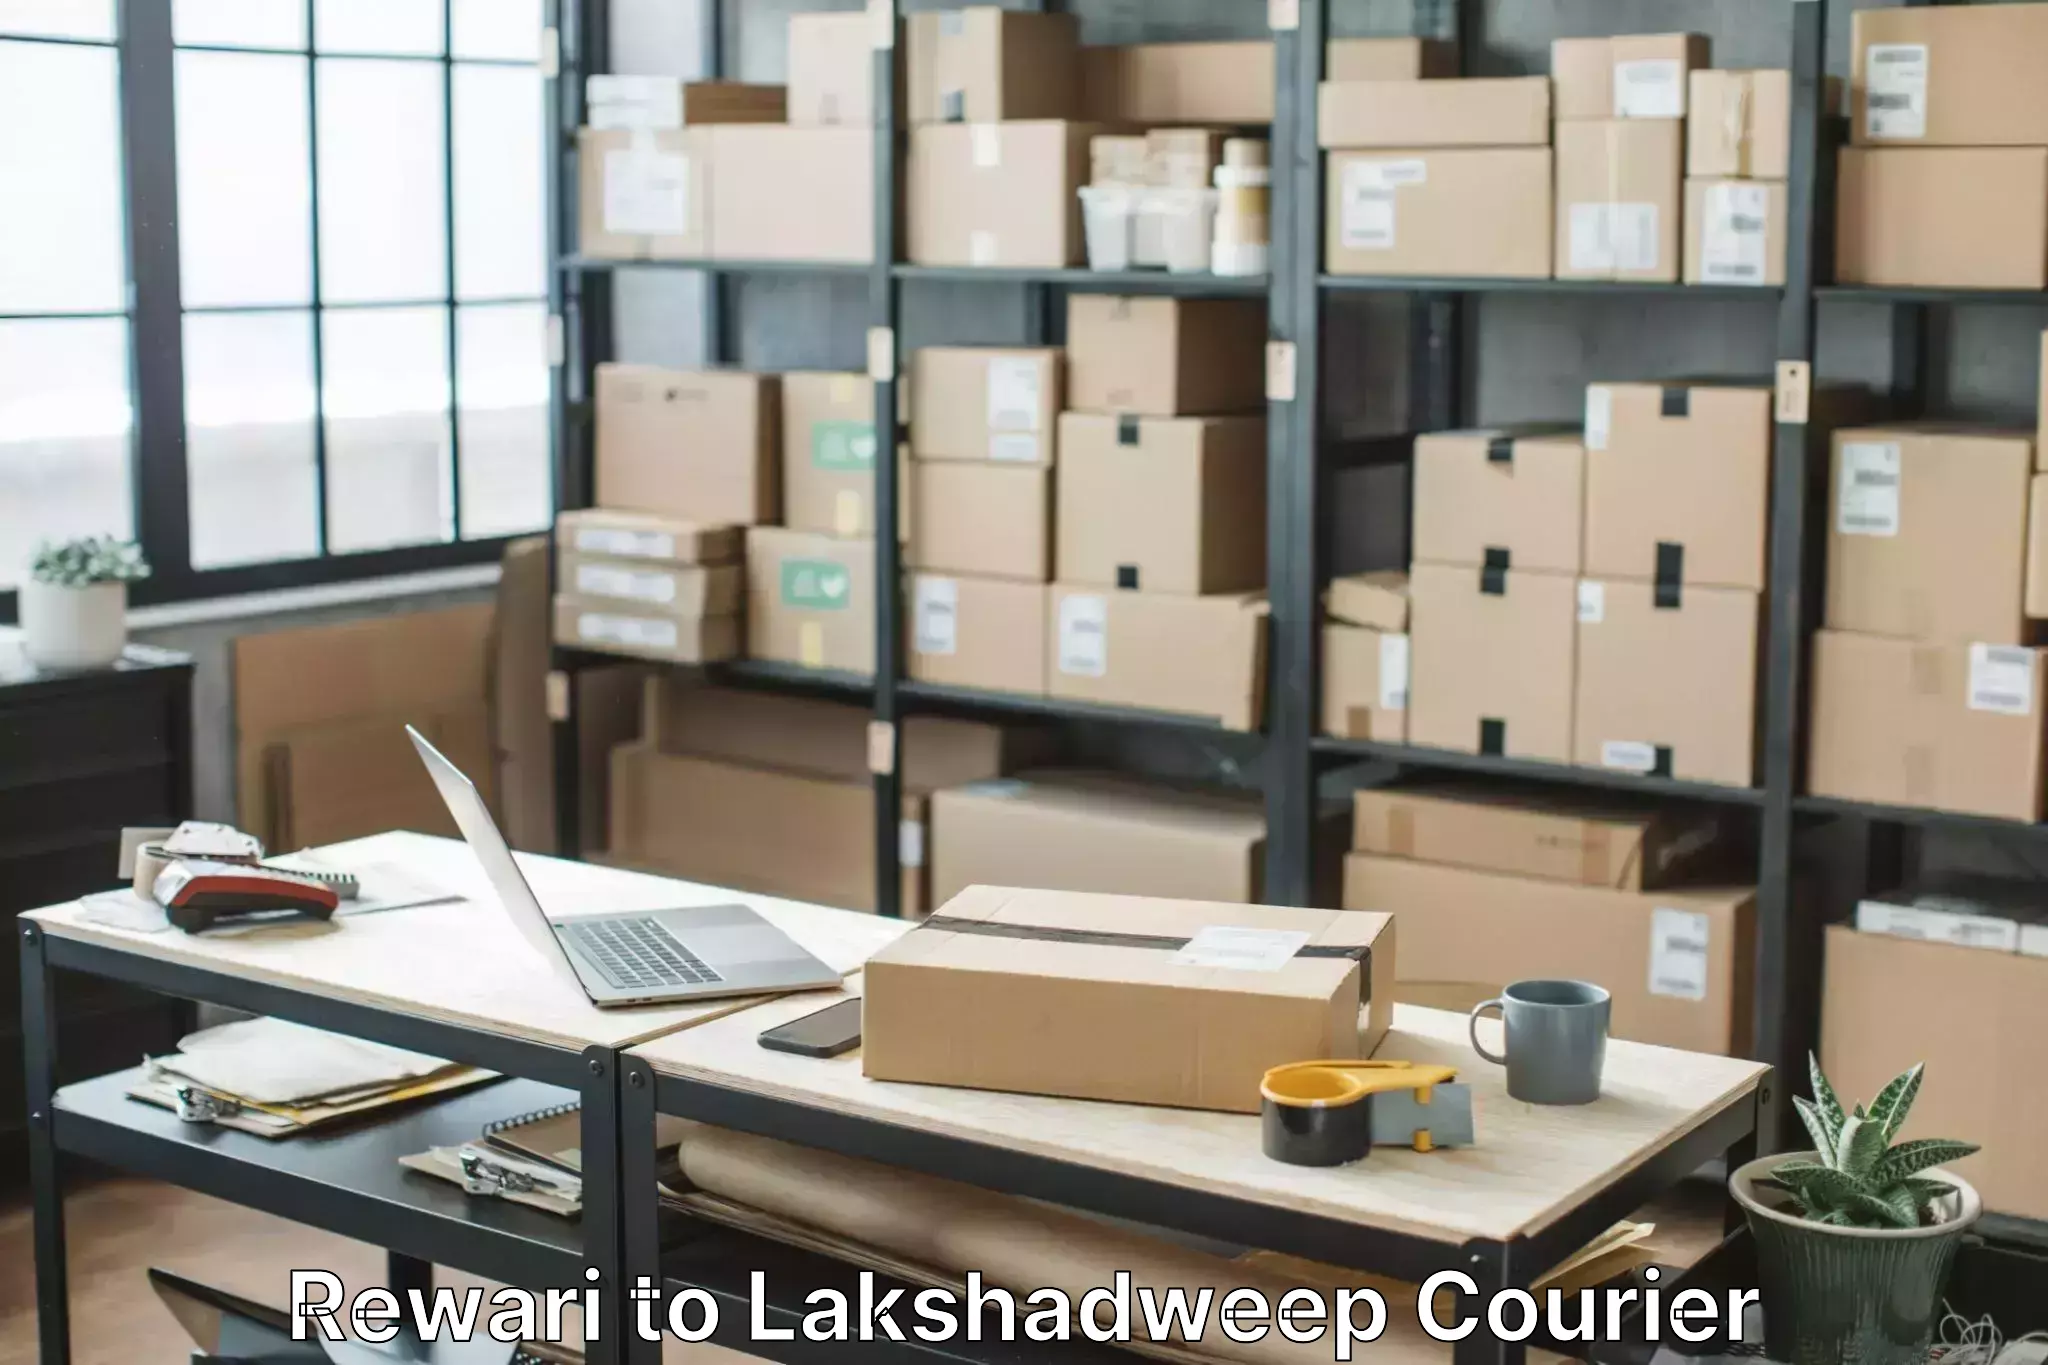 Household moving experts Rewari to Lakshadweep